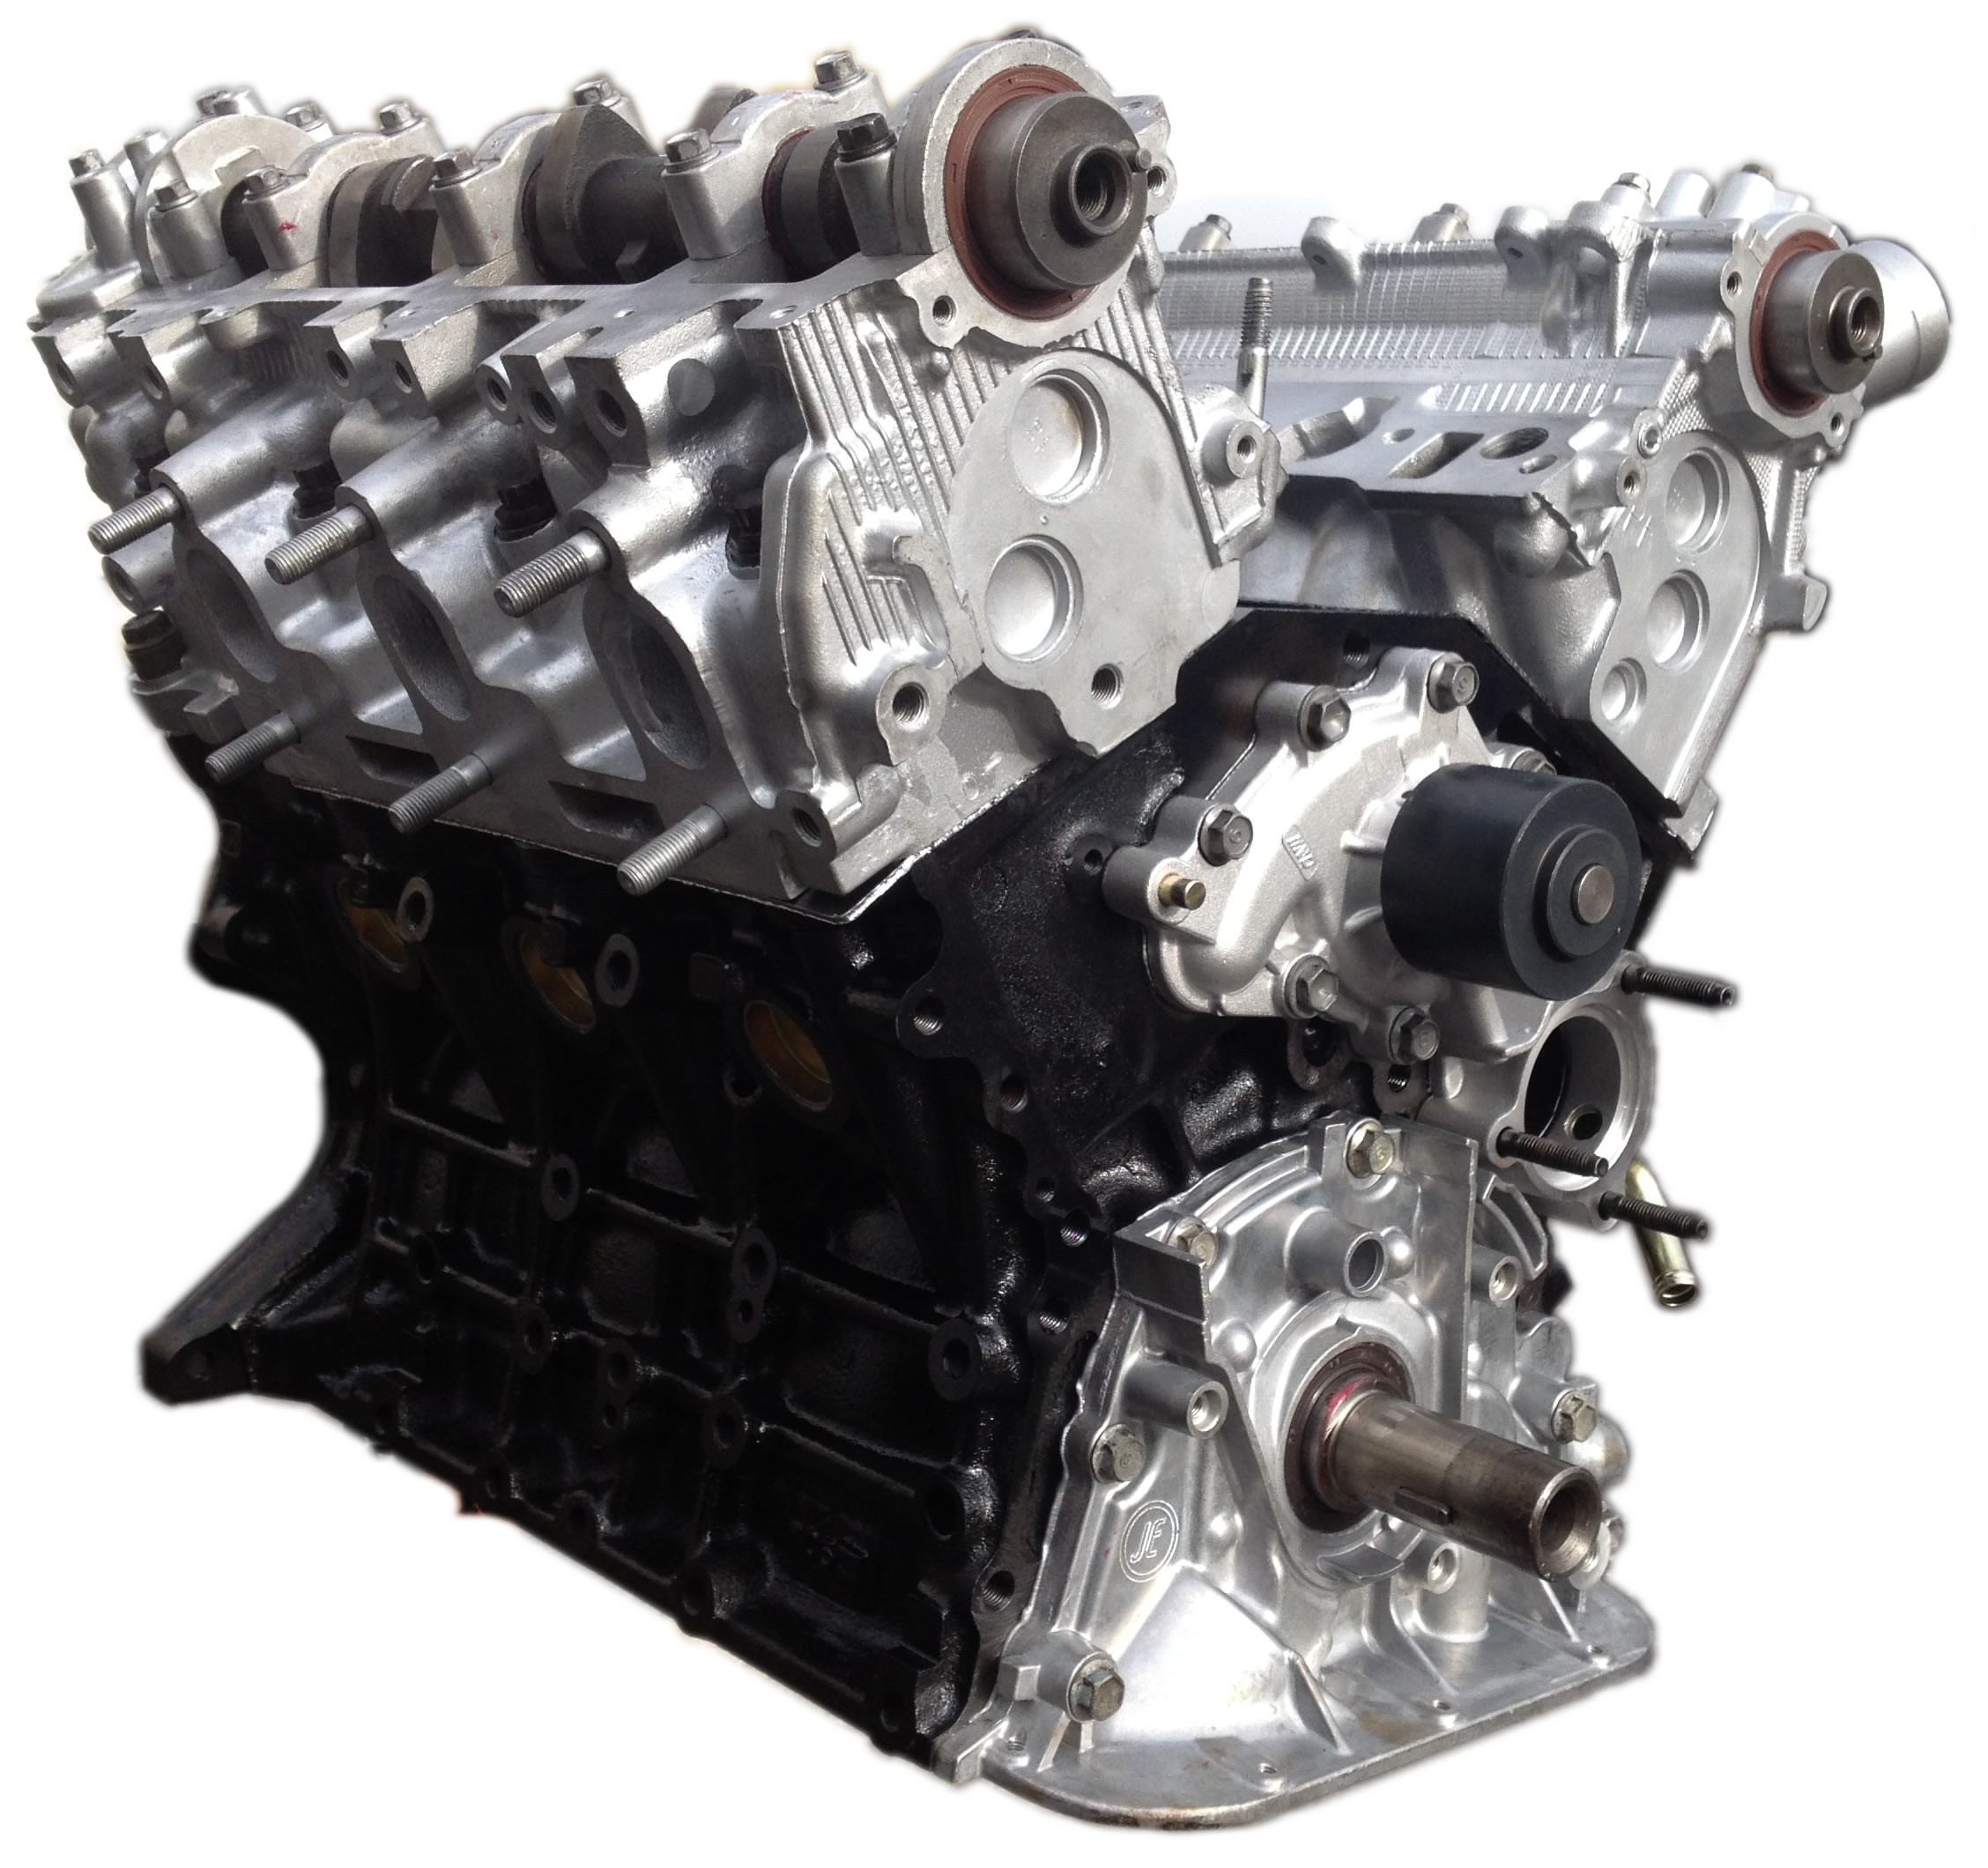 3VZ-FE Toyota engine